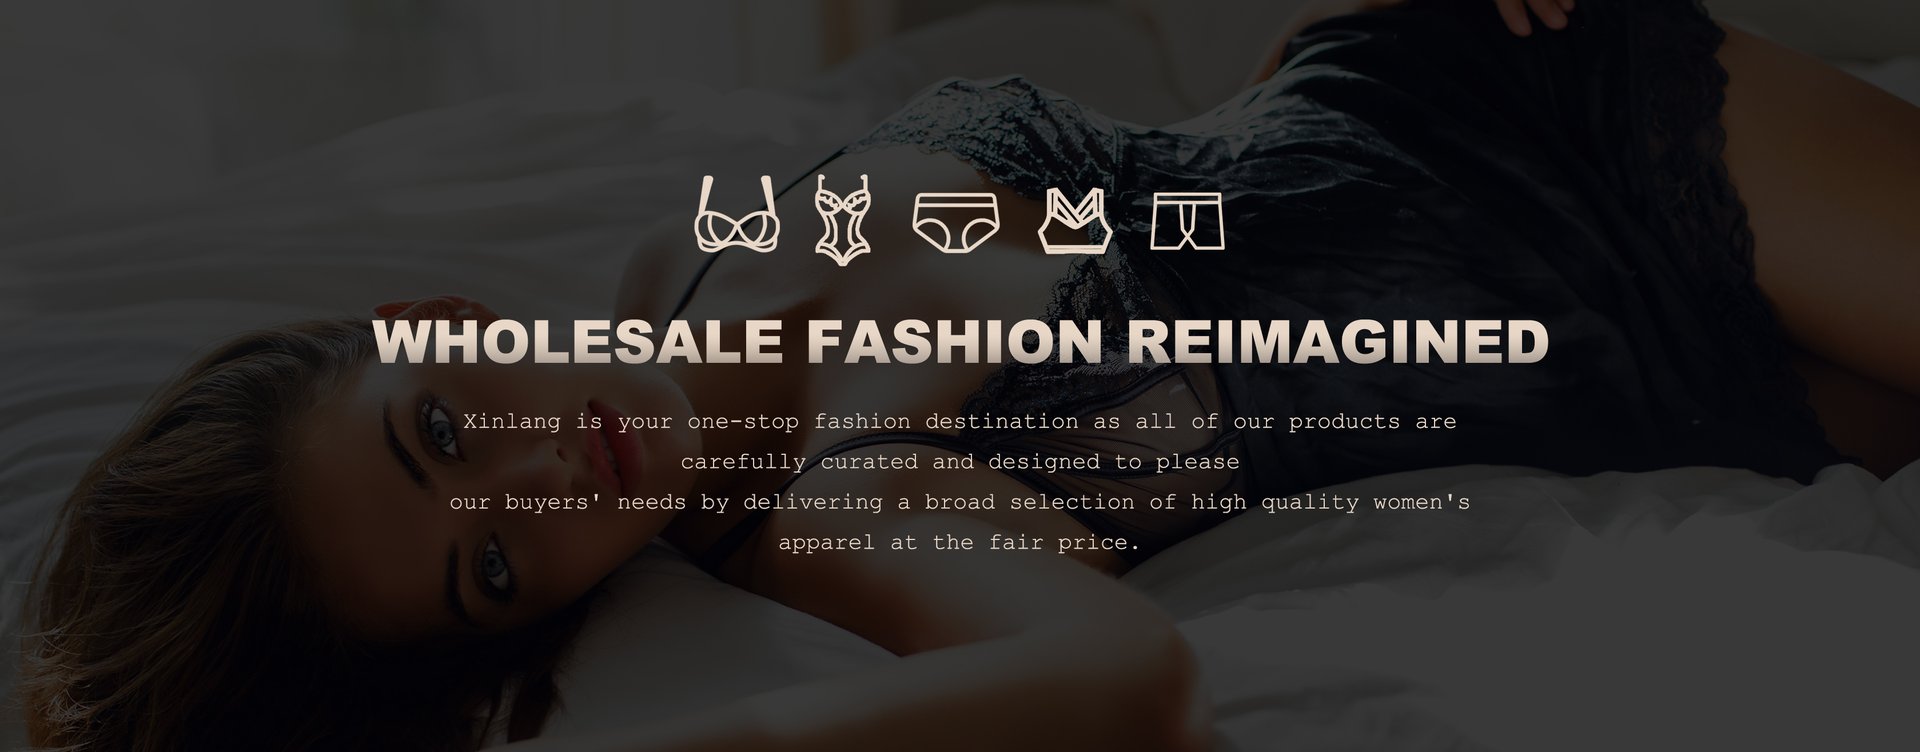 wholesale lingerie supplier